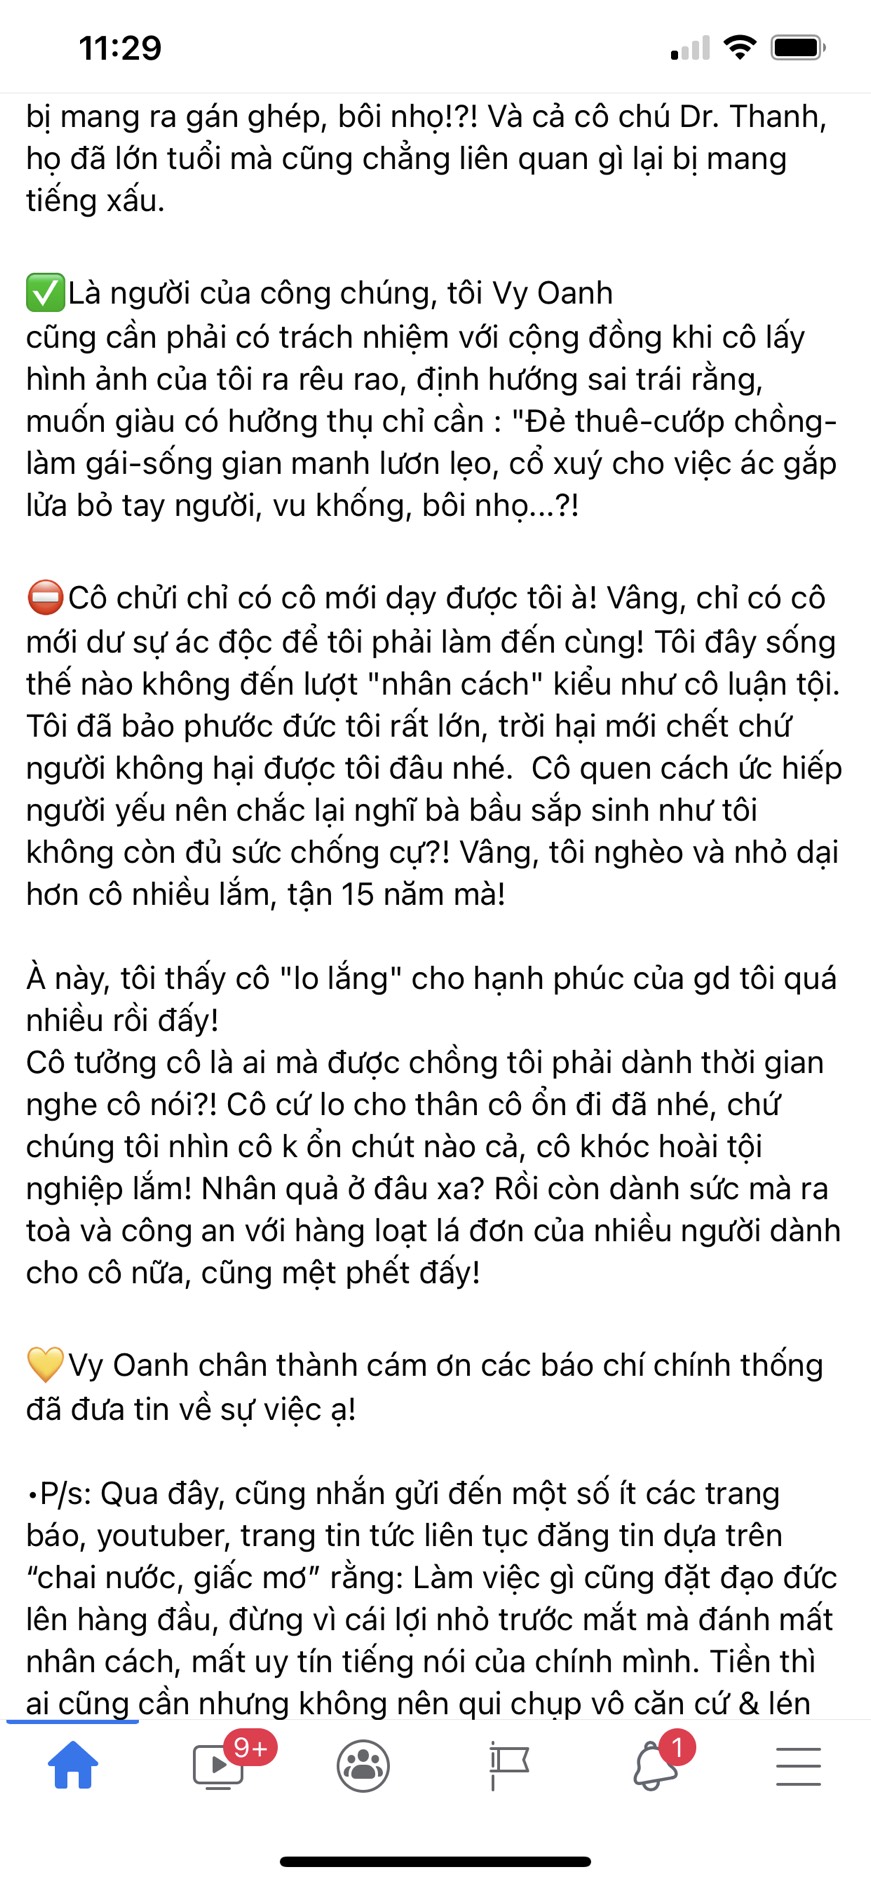 Bài đăng dài thông báo Vy Oanh chính thức bí mật Phương Hằng được nữ ca sĩ chia sẻ trên trang cá nhân